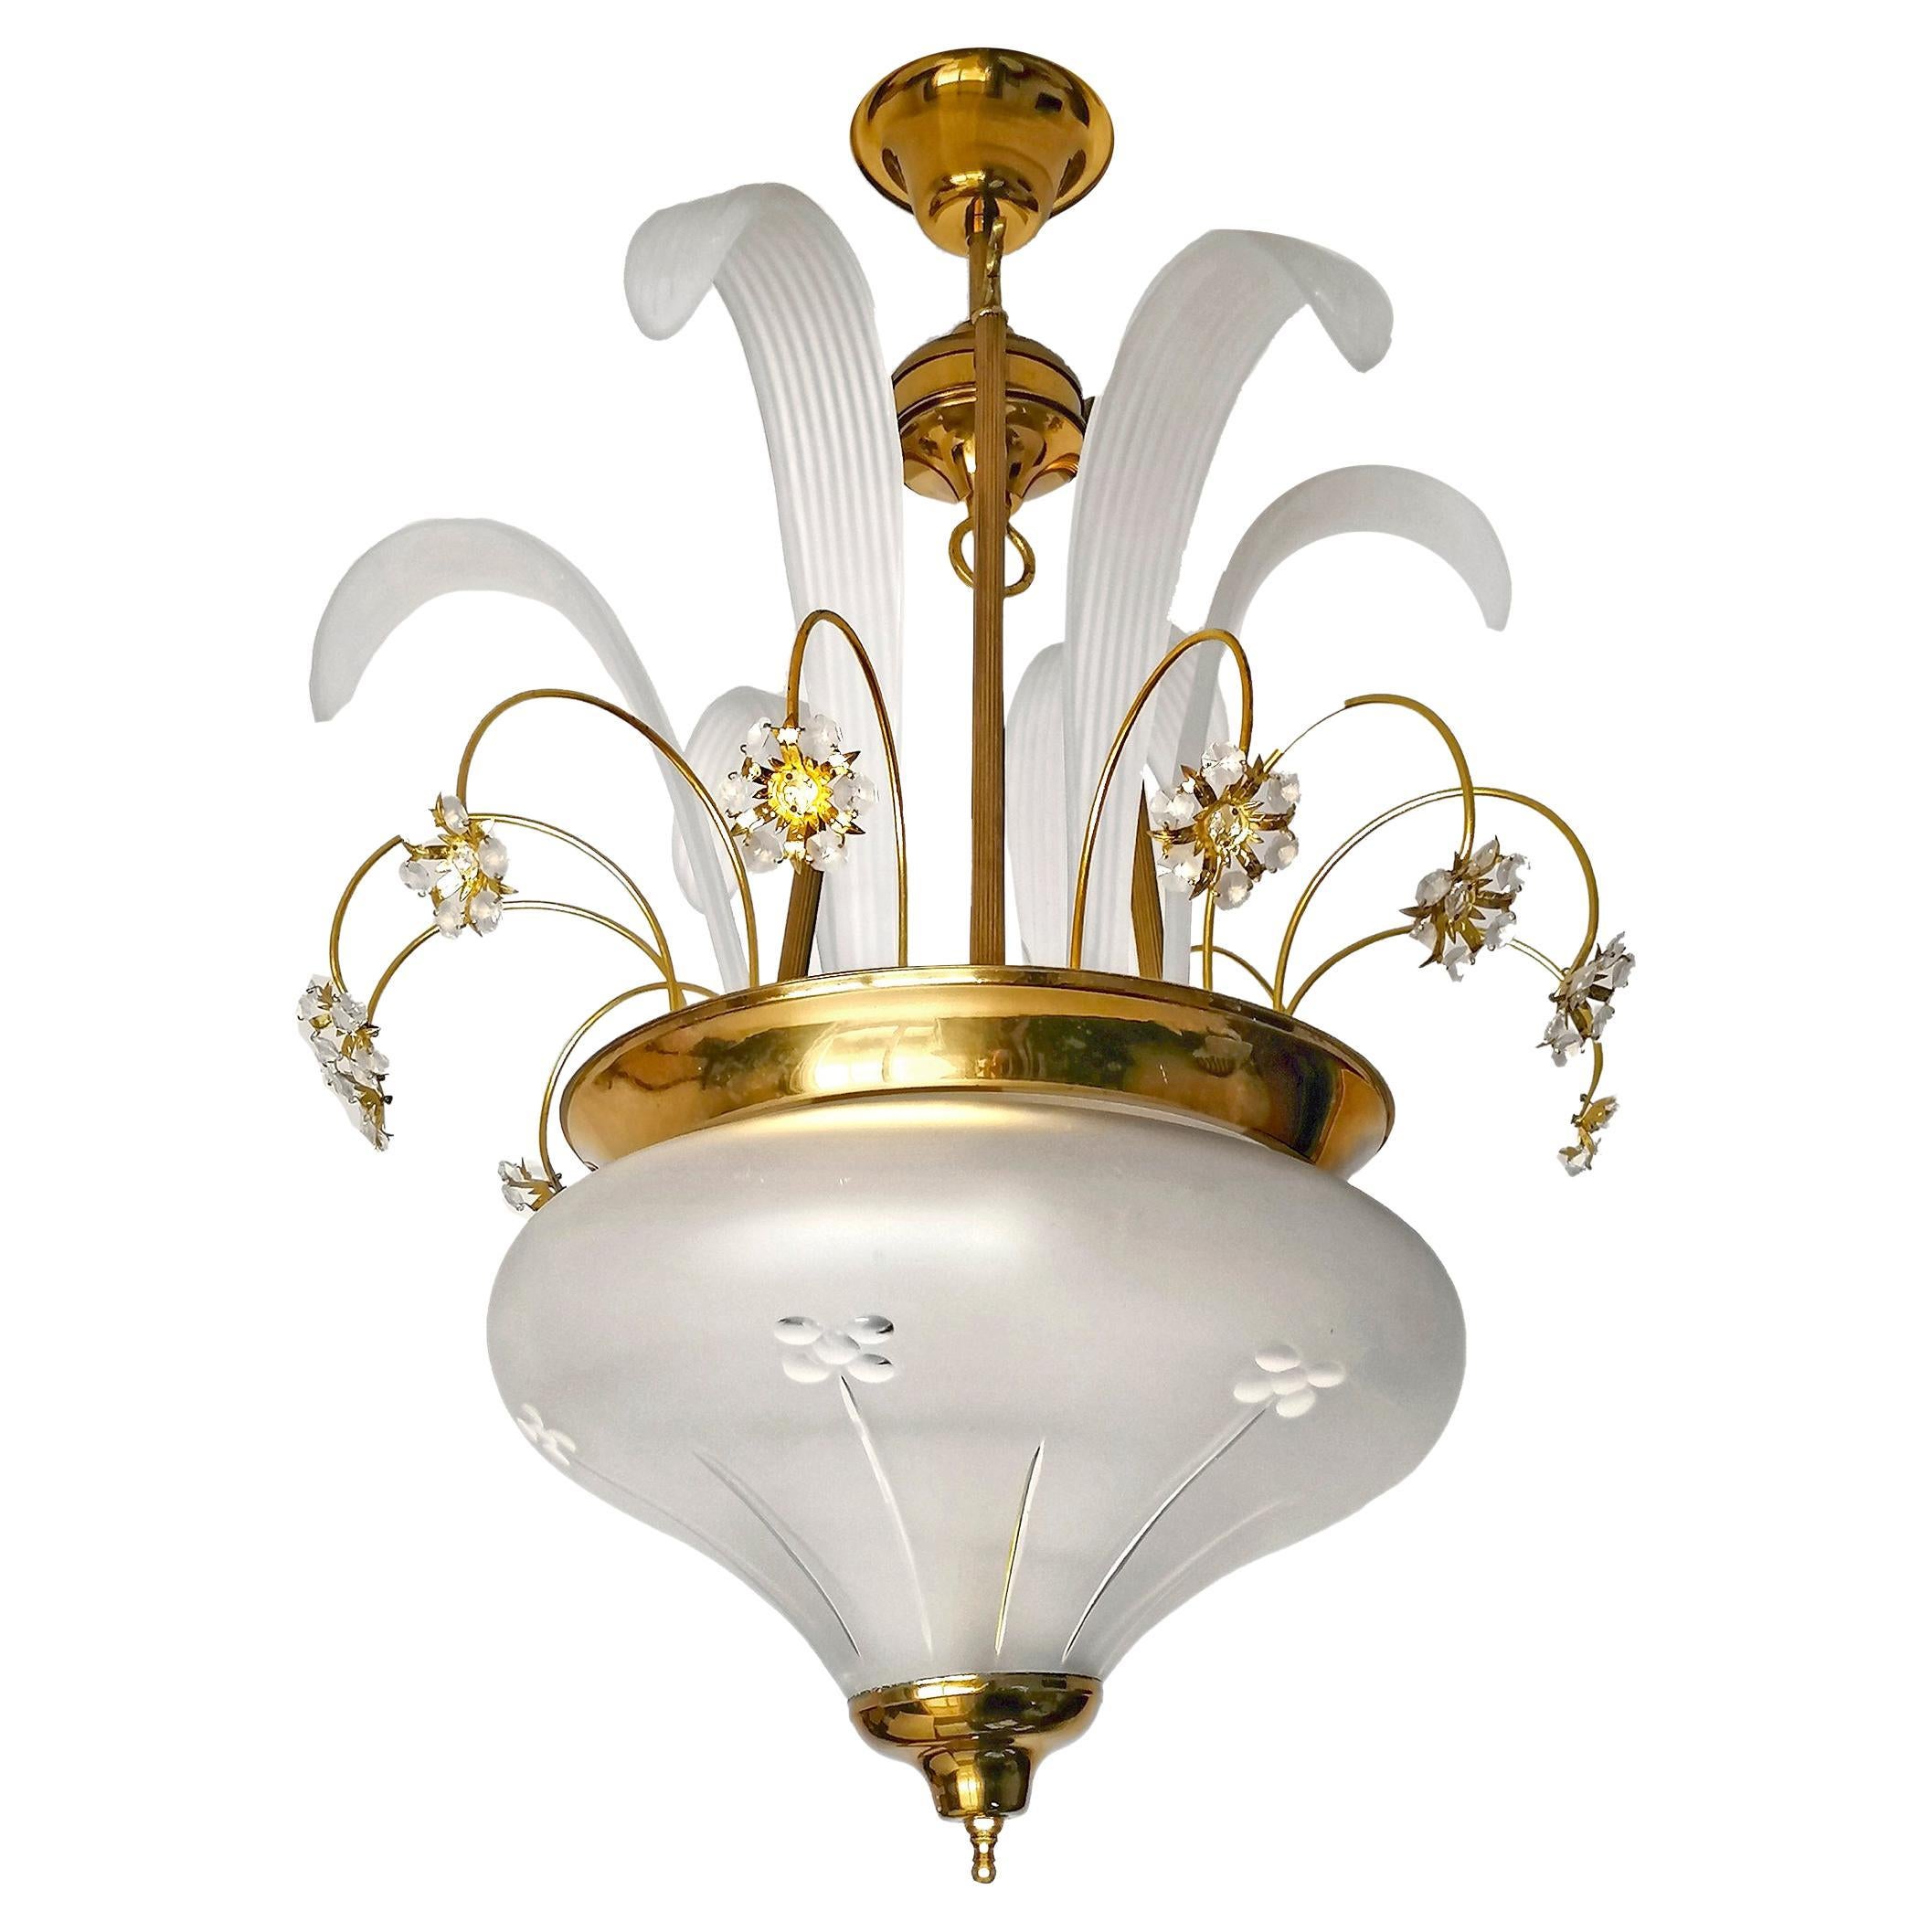 Fabuleux lustre Hollywood Regency en cristal de Murano avec bouquet de fleurs et laiton doré
Dimensions
Hauteur : 31.5 in. (80 cm)
Diamètre : 19.69 in. (50 cm)
3 ampoules E27/ bon état de fonctionnement
Montage nécessaire.